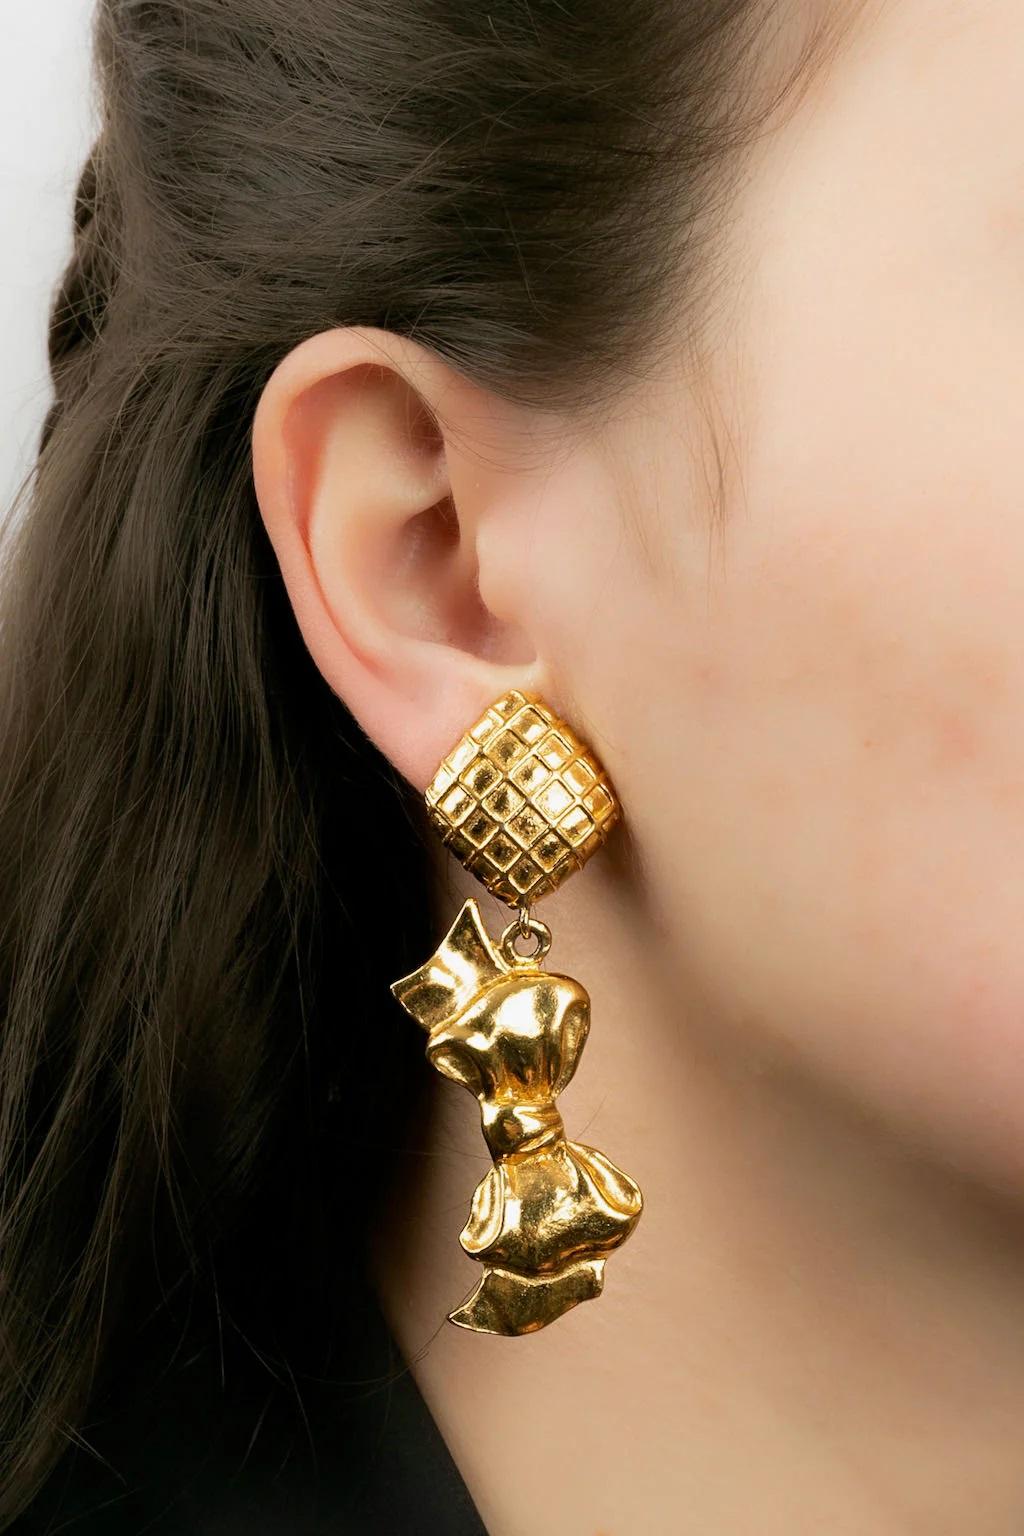 Chanel - (Made in France) Vergoldete Metall-Clip-Ohrringe.

Zusätzliche Informationen:
Abmessungen: 7 L cm

Bedingung: 
Sehr guter Zustand

Verkäufer Ref Nummer: BOB23